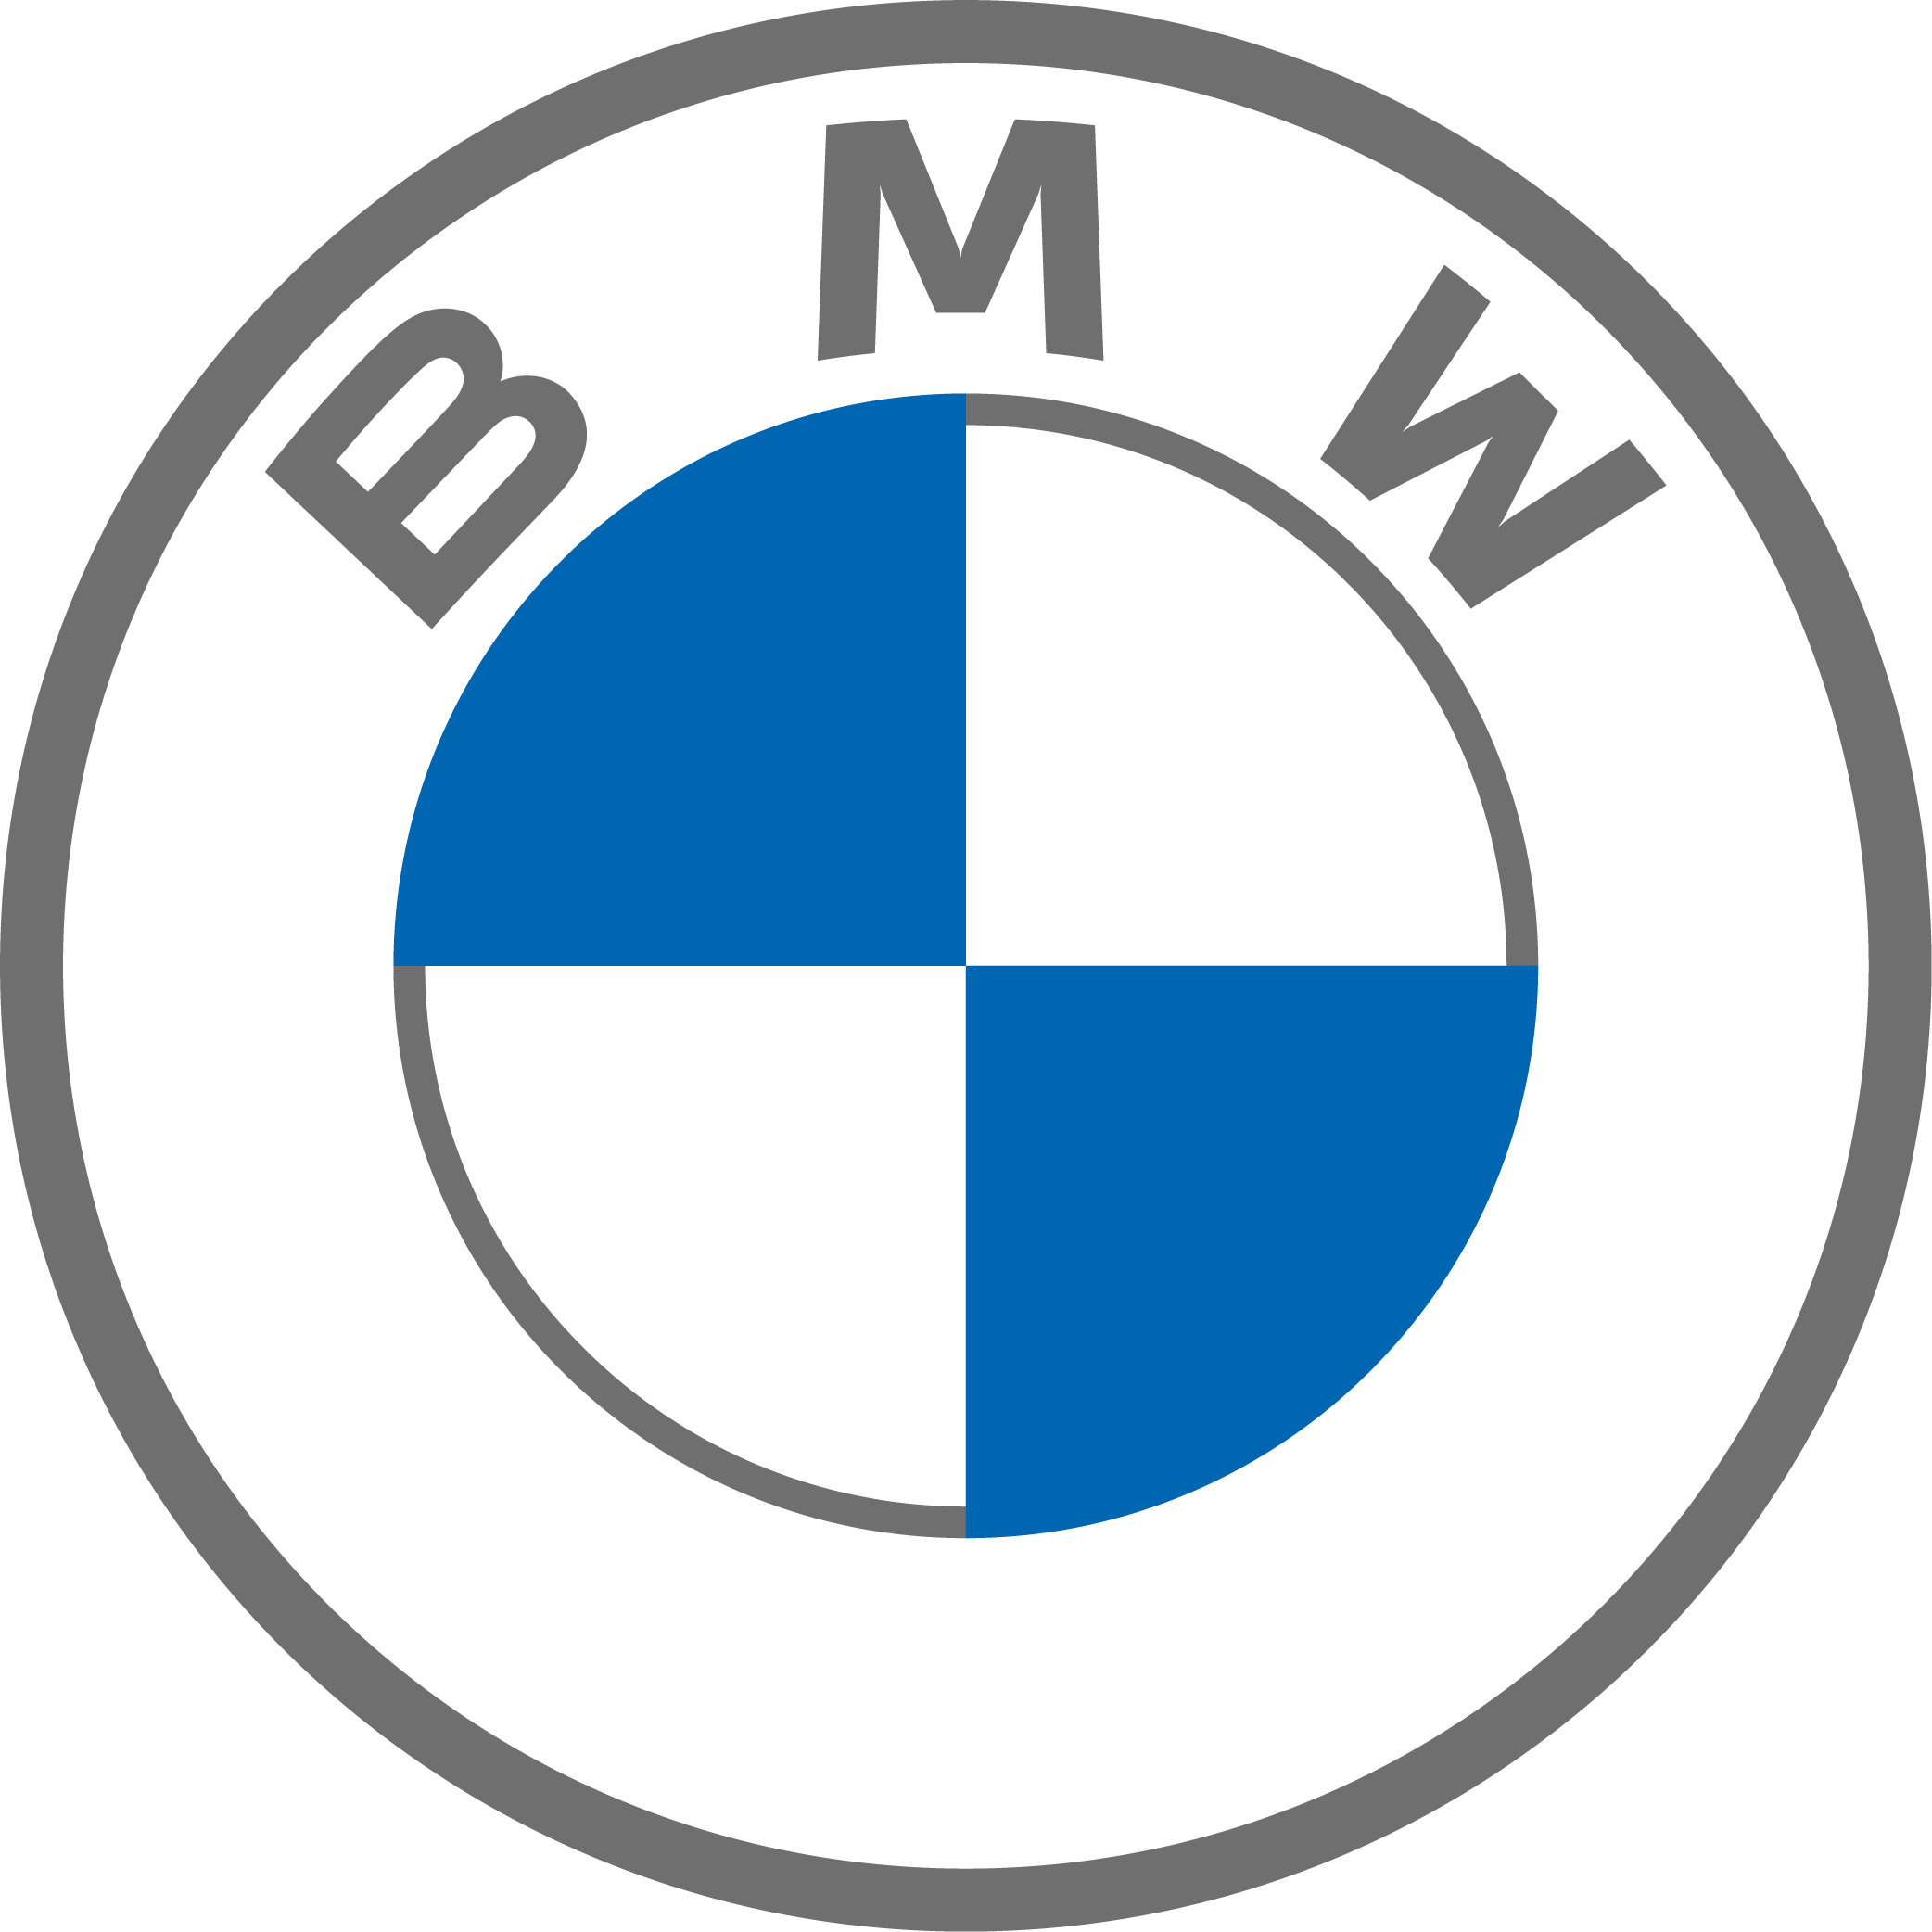 Test Drive BMW iX3: New Deal